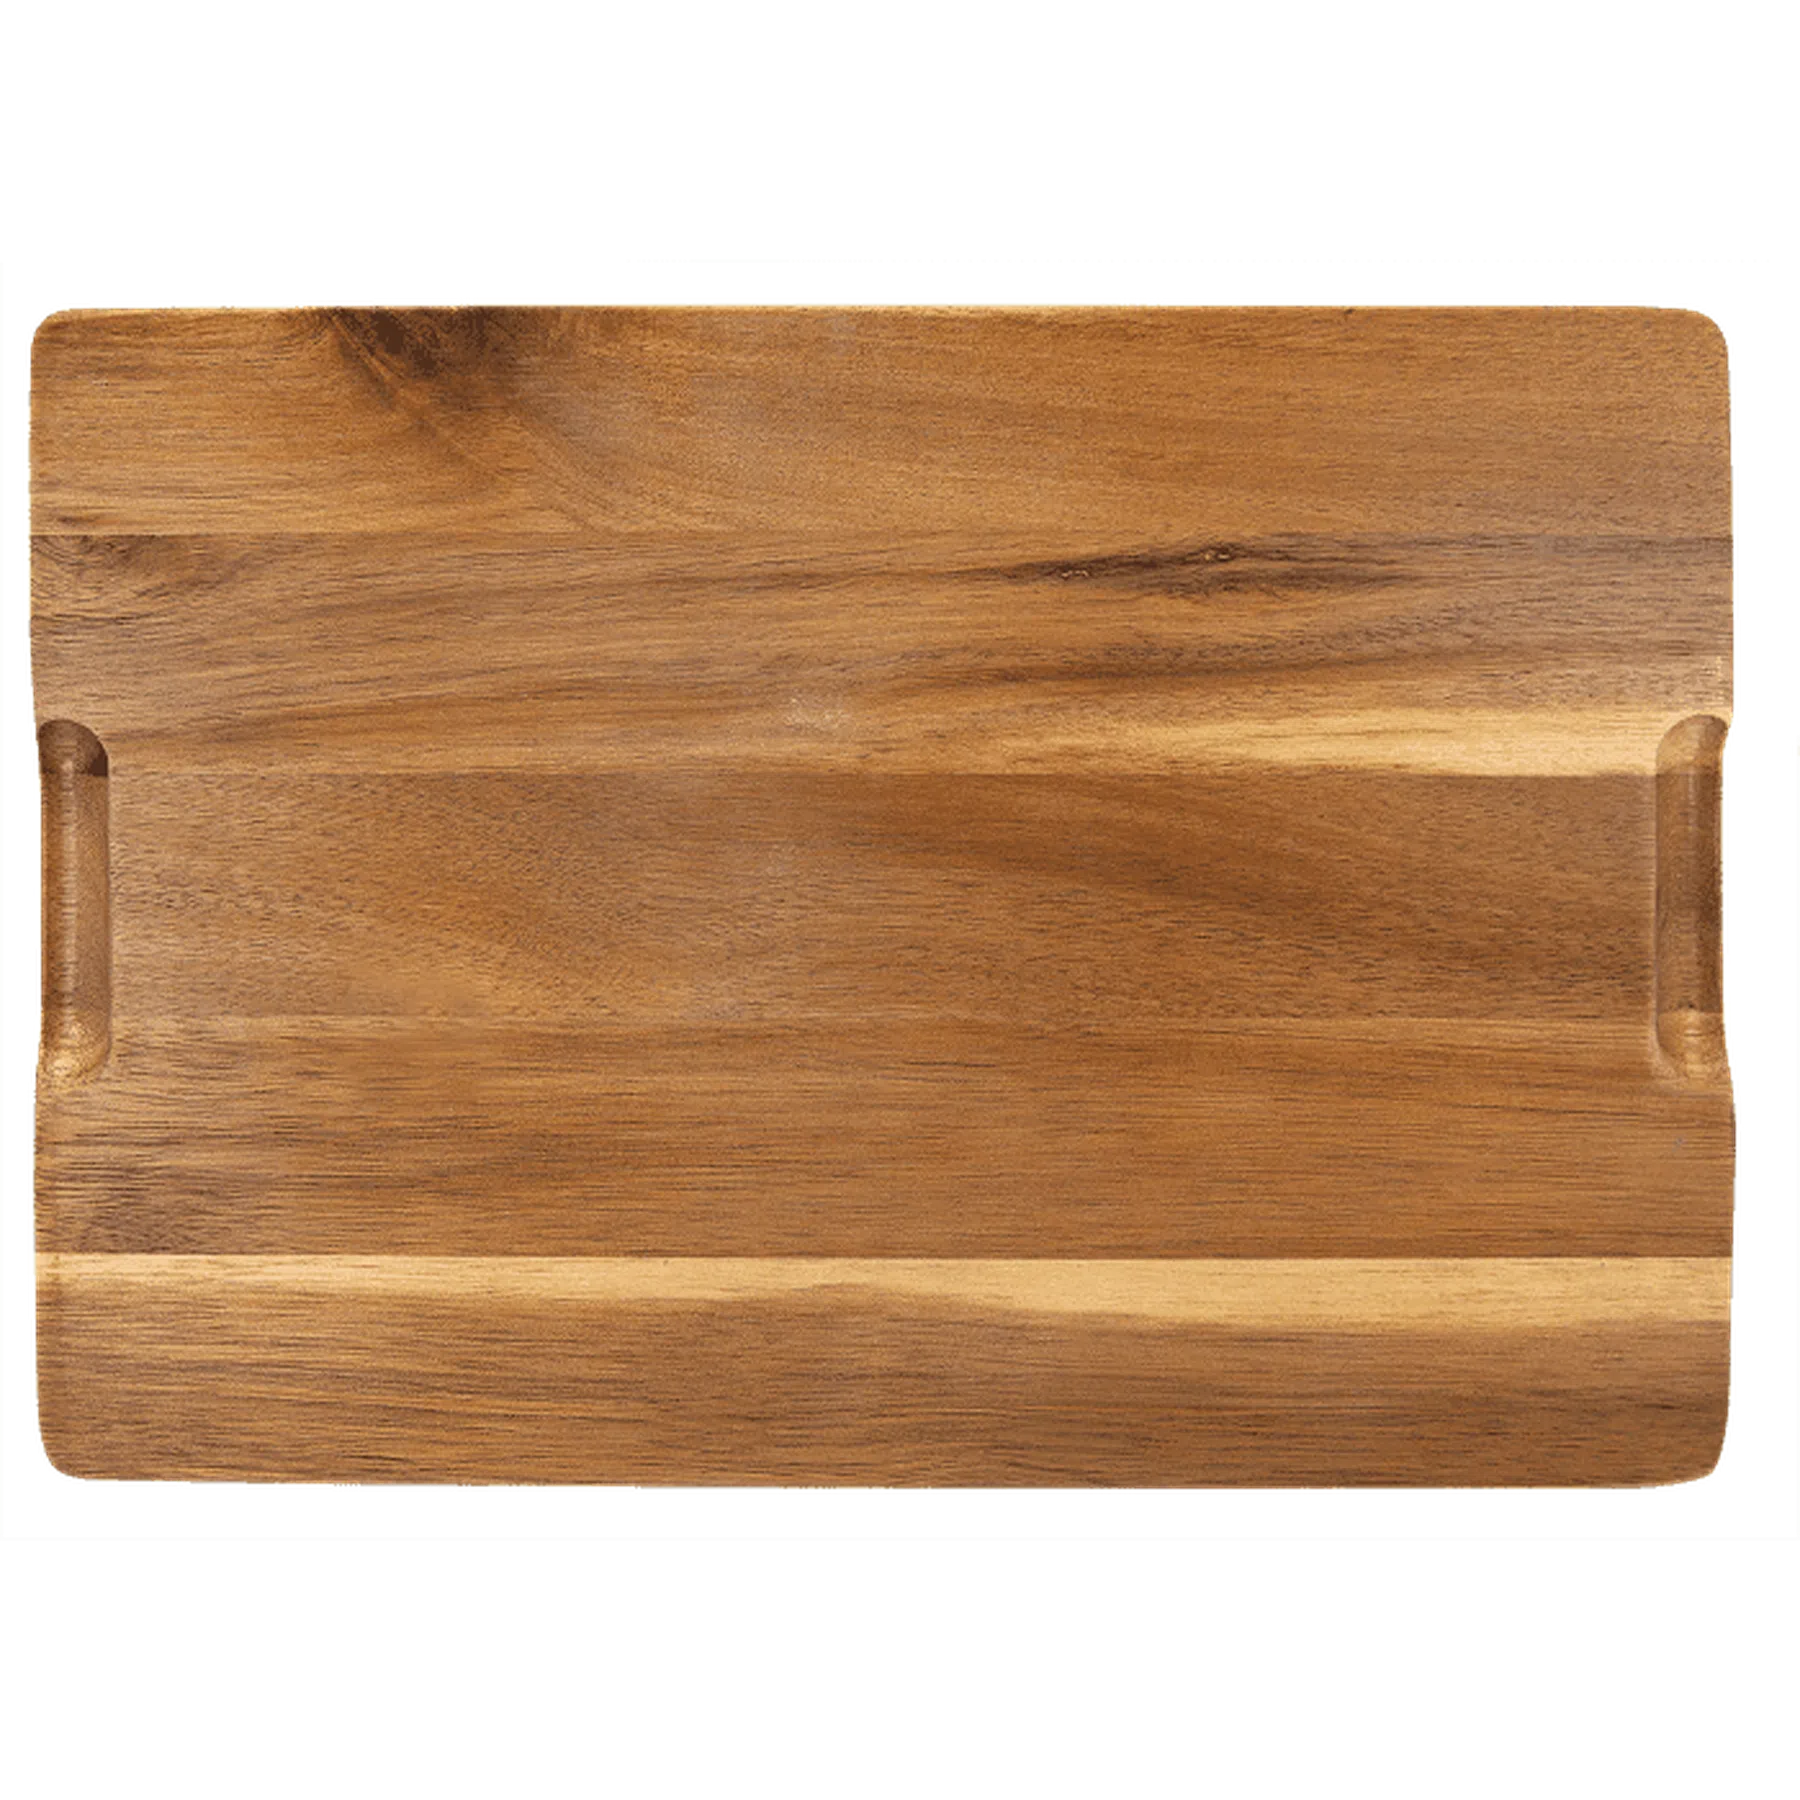 Acacia Wood/Slate Cutting Board (13" x 9")